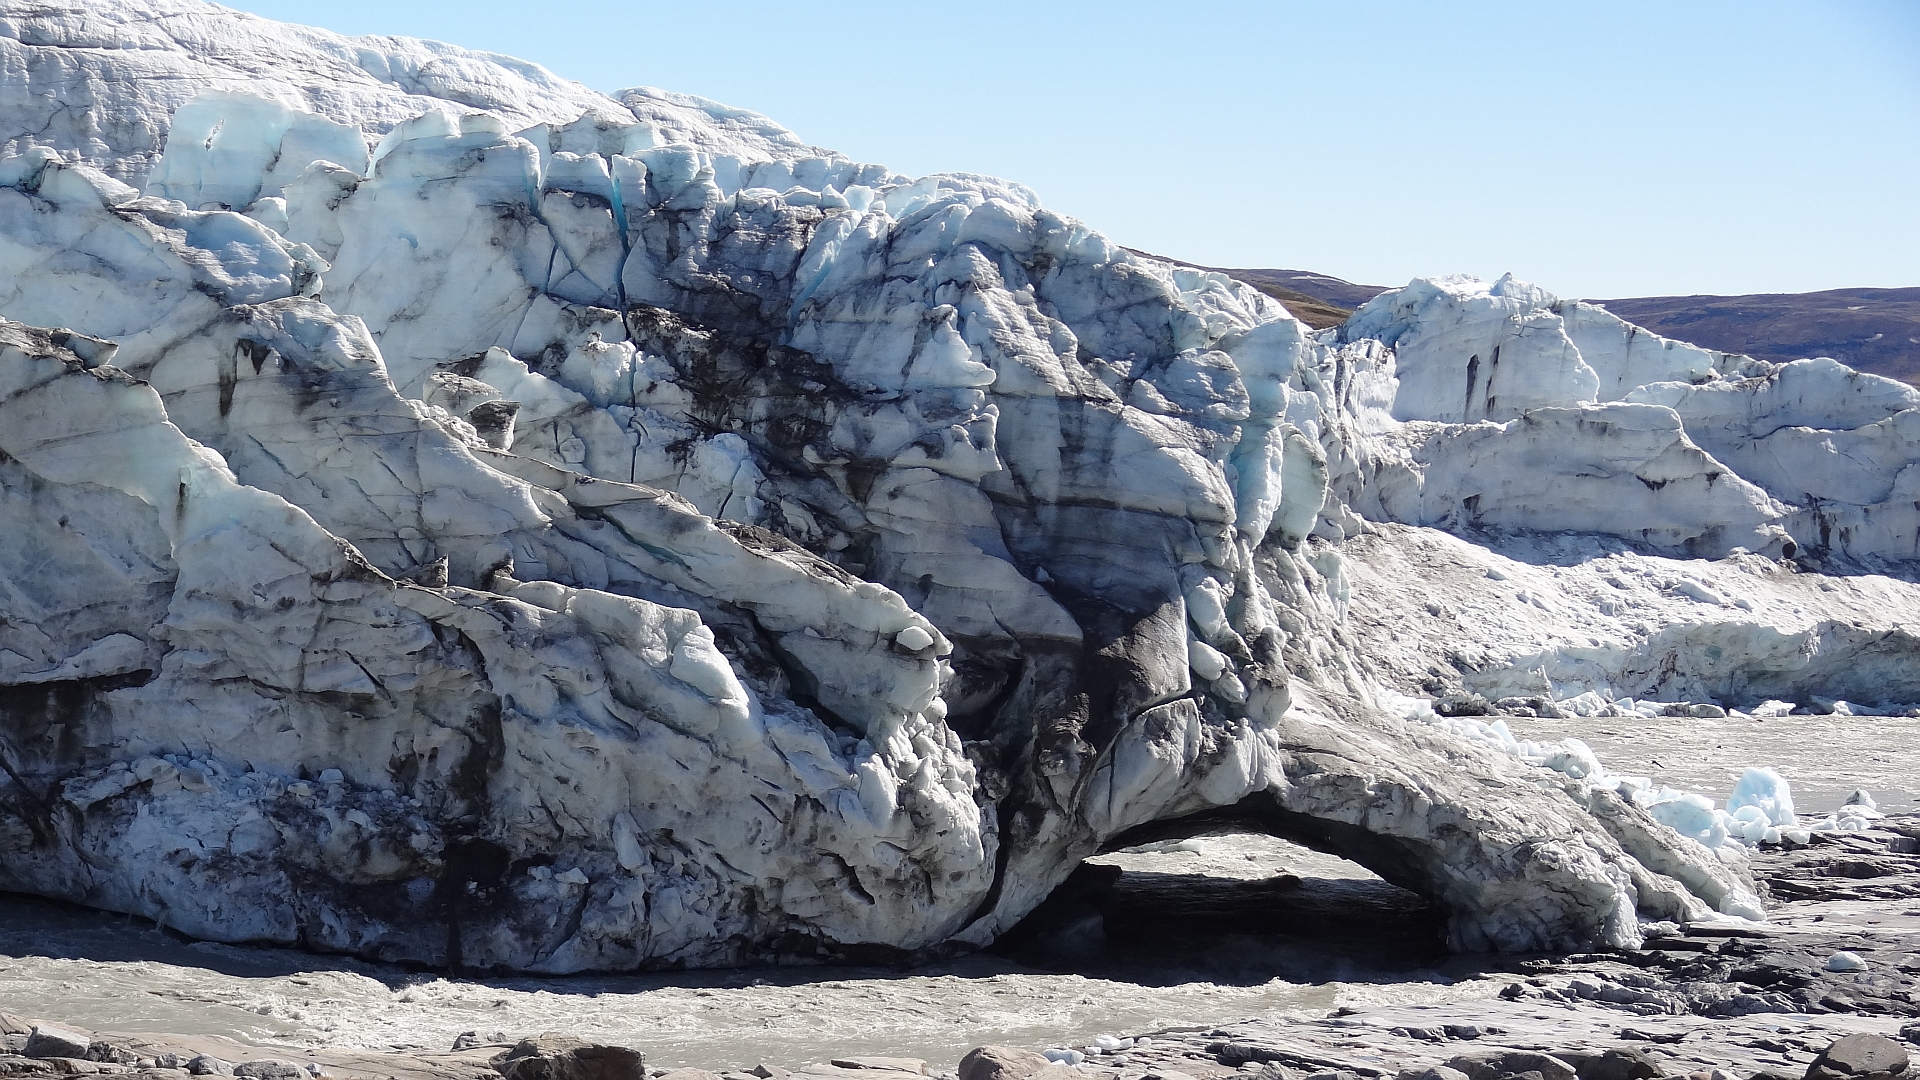 Gletscher, die auf dem Festland kalben, erzeugen reißende Wasserströme